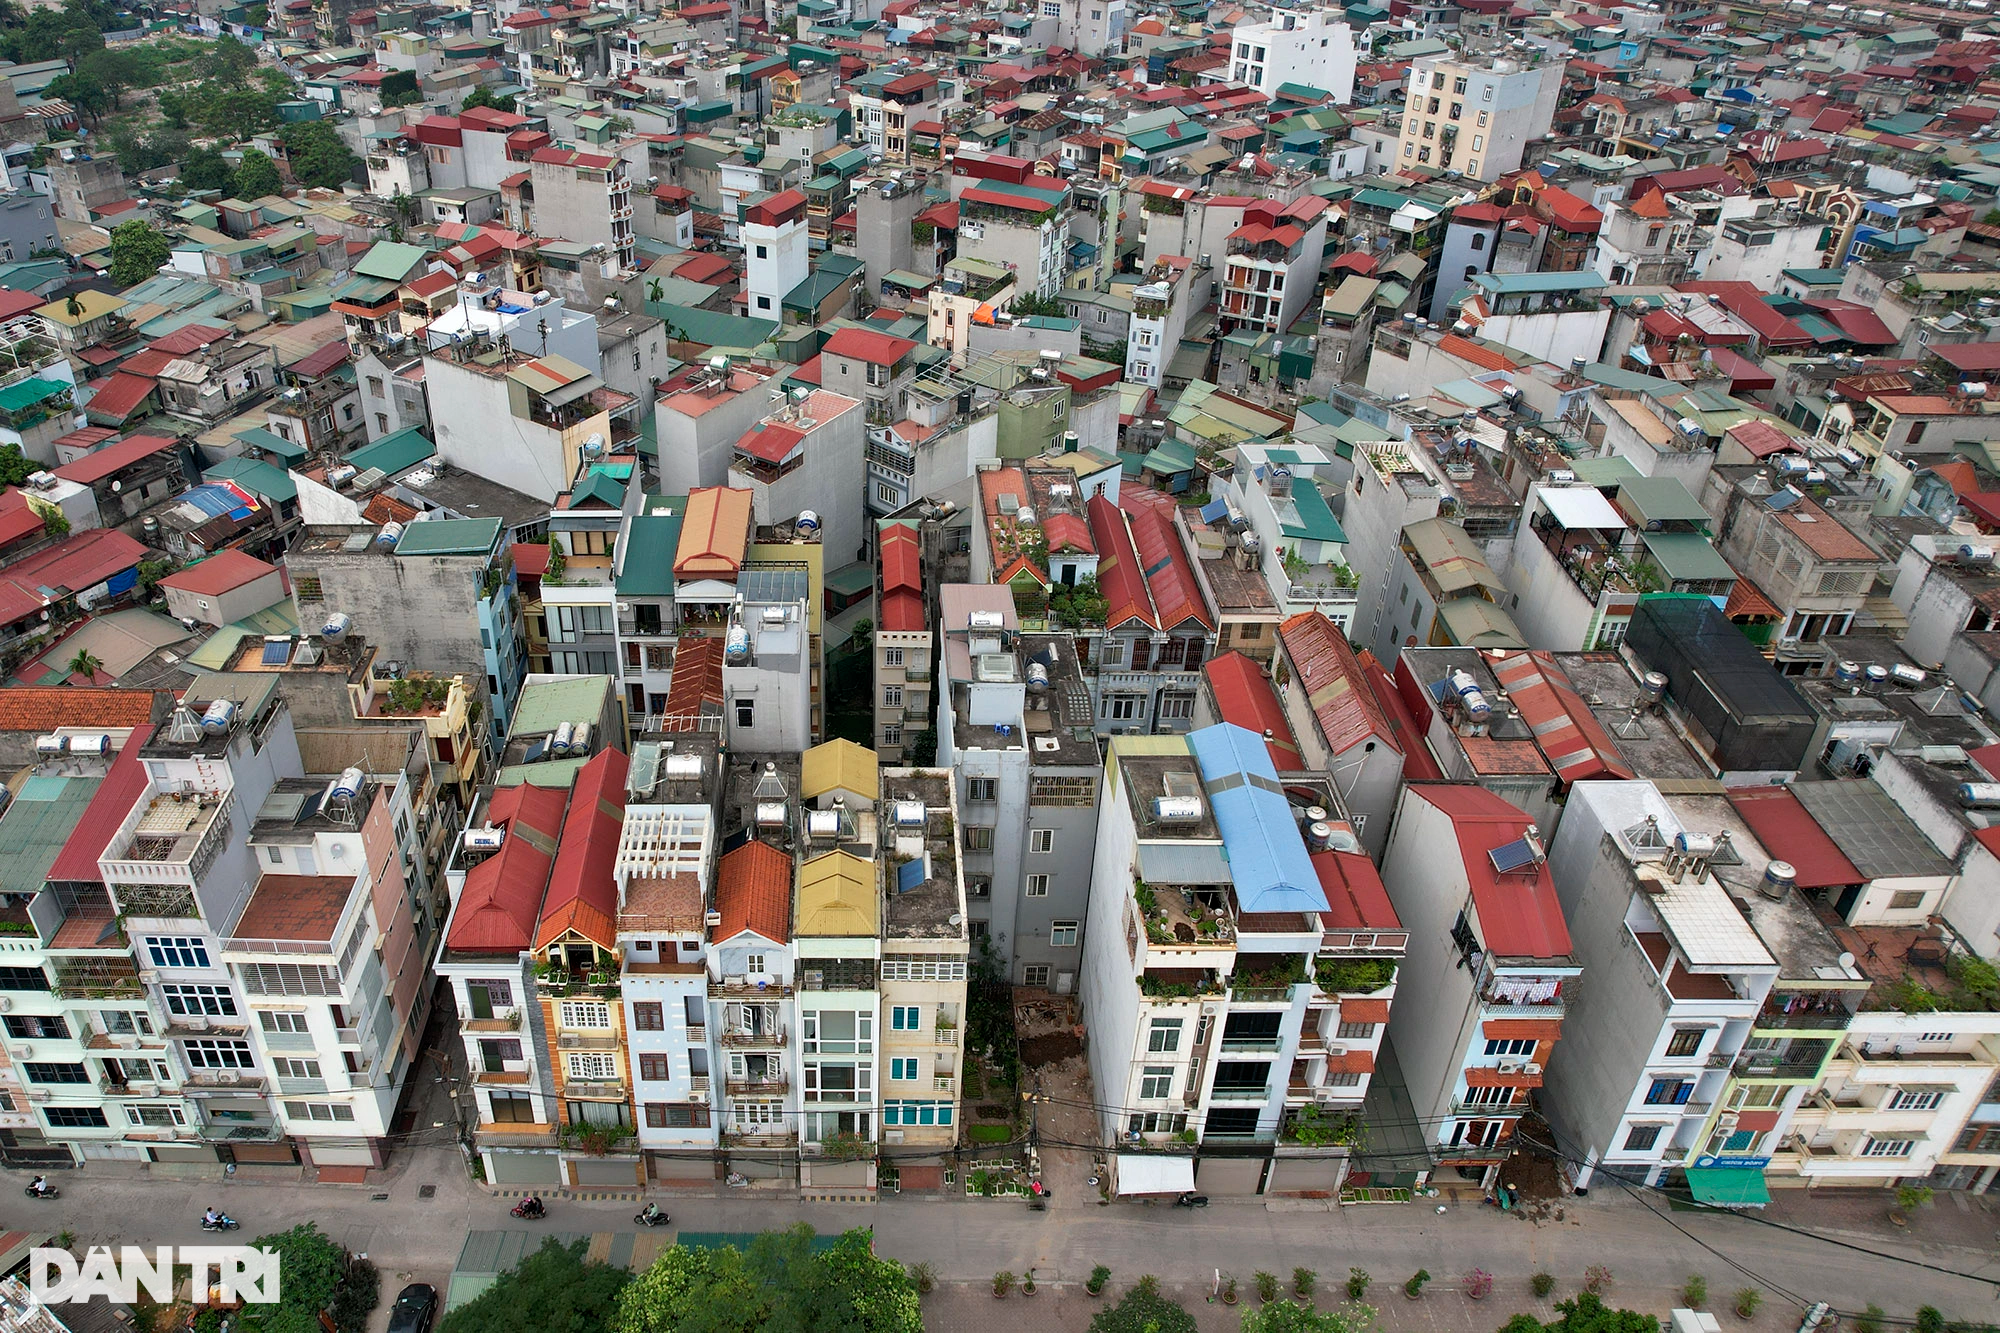 Nhà cửa dày đặc không còn khoảng trống khi nhìn đô thị Hà Nội từ trên cao - 8